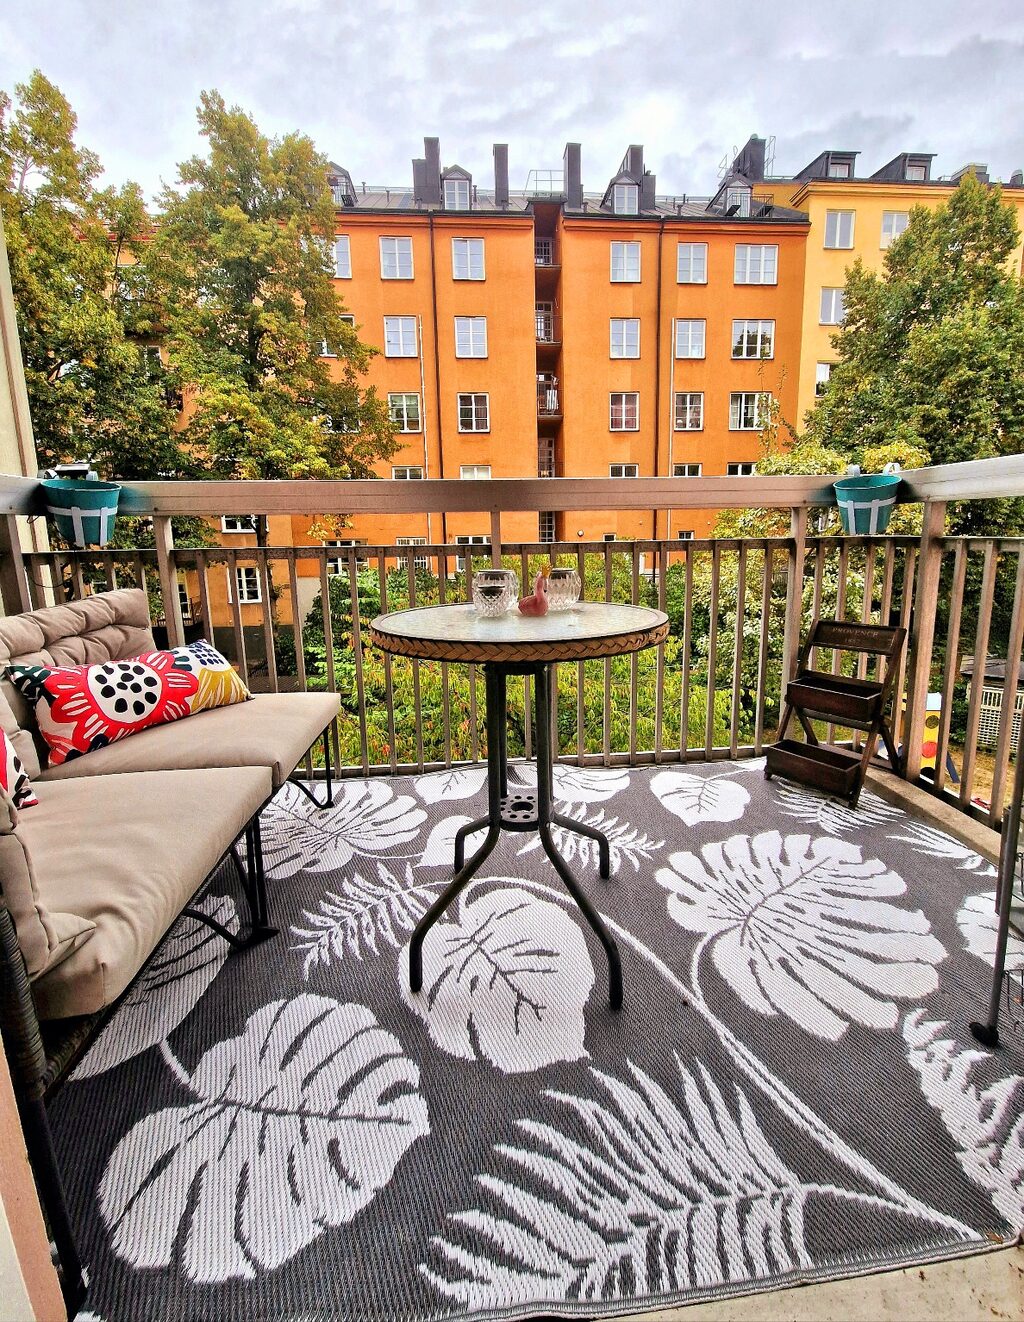 Lägenhetsbyte - Tjurbergsgatan 27, 118 56 Stockholm